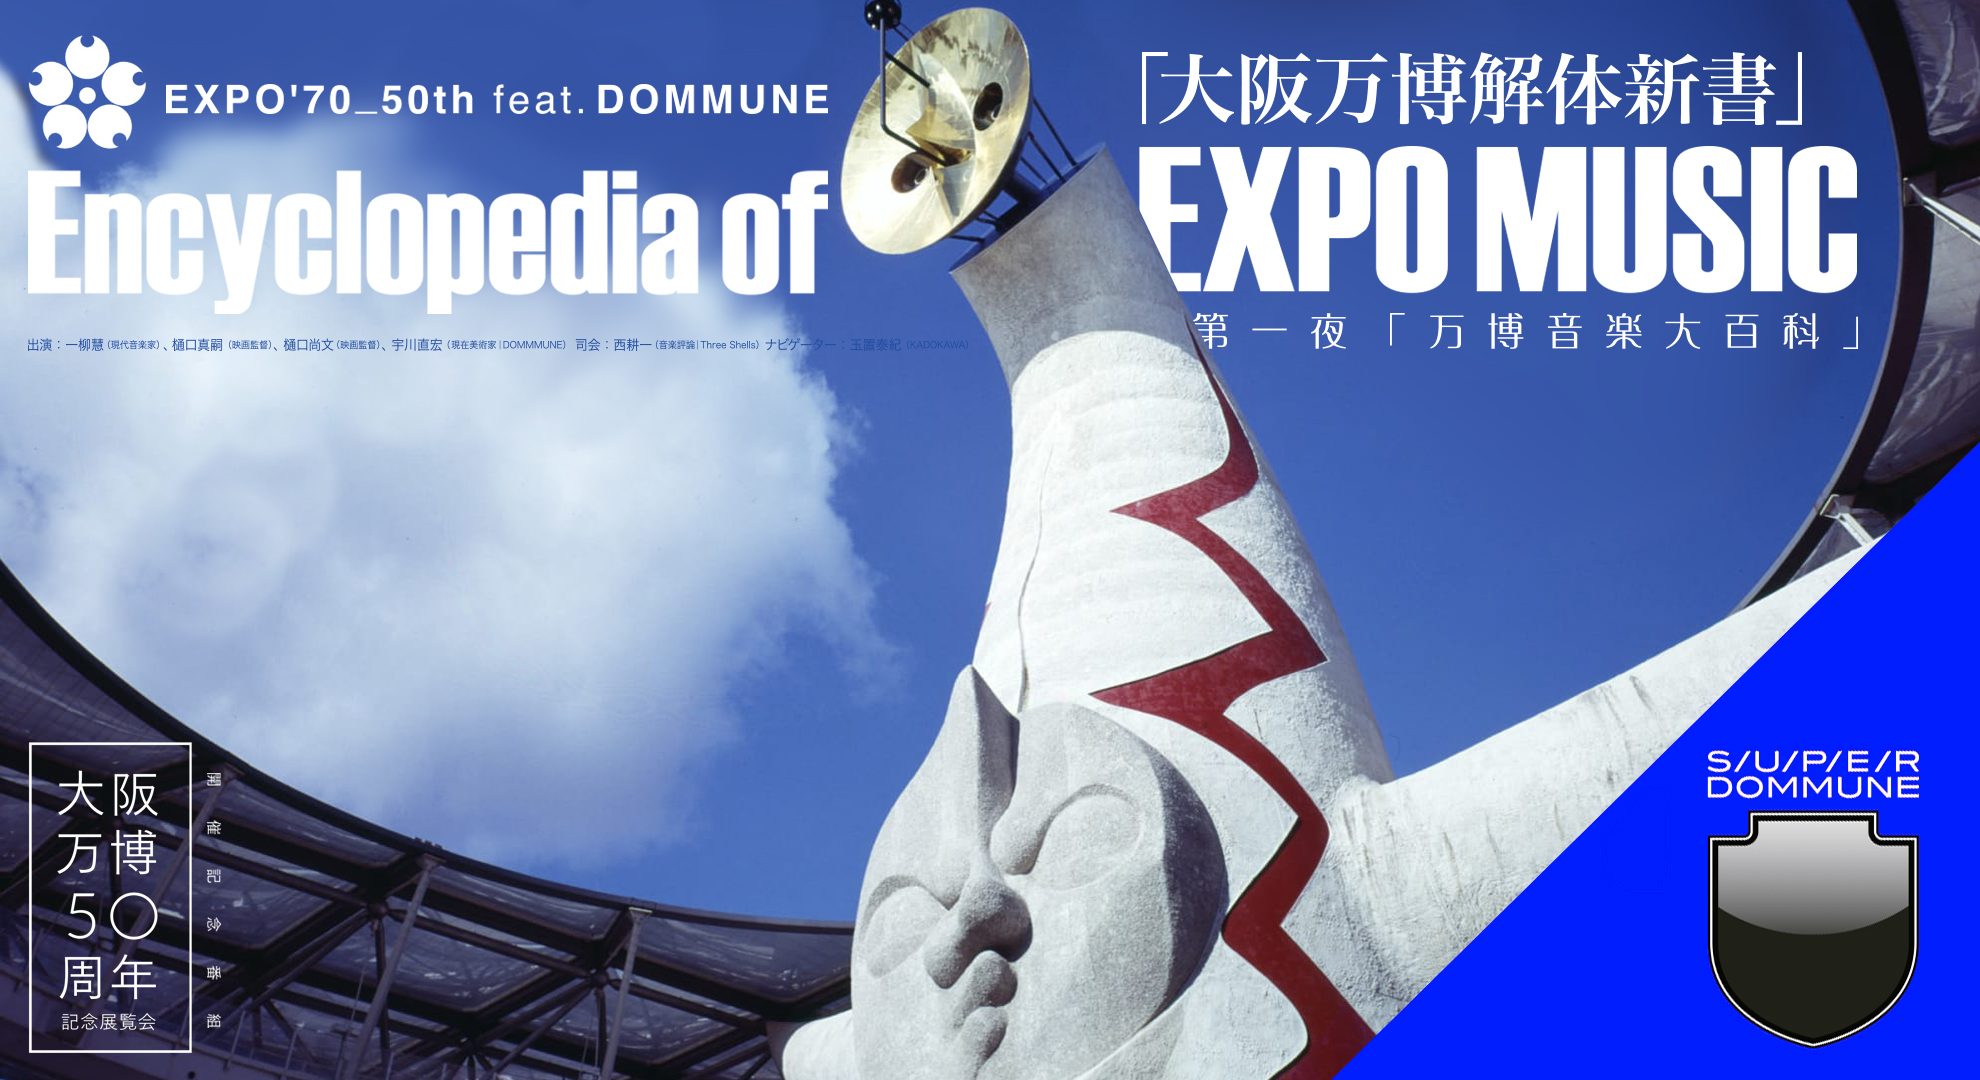 大阪万博50周年記念展覧会 開催記念番組 Expo 70 50th Feat Dommune 大阪万博解体新書 Super Dommune 第一夜 万博音楽大百科 Encyclopedia Of Expo Music Dommune